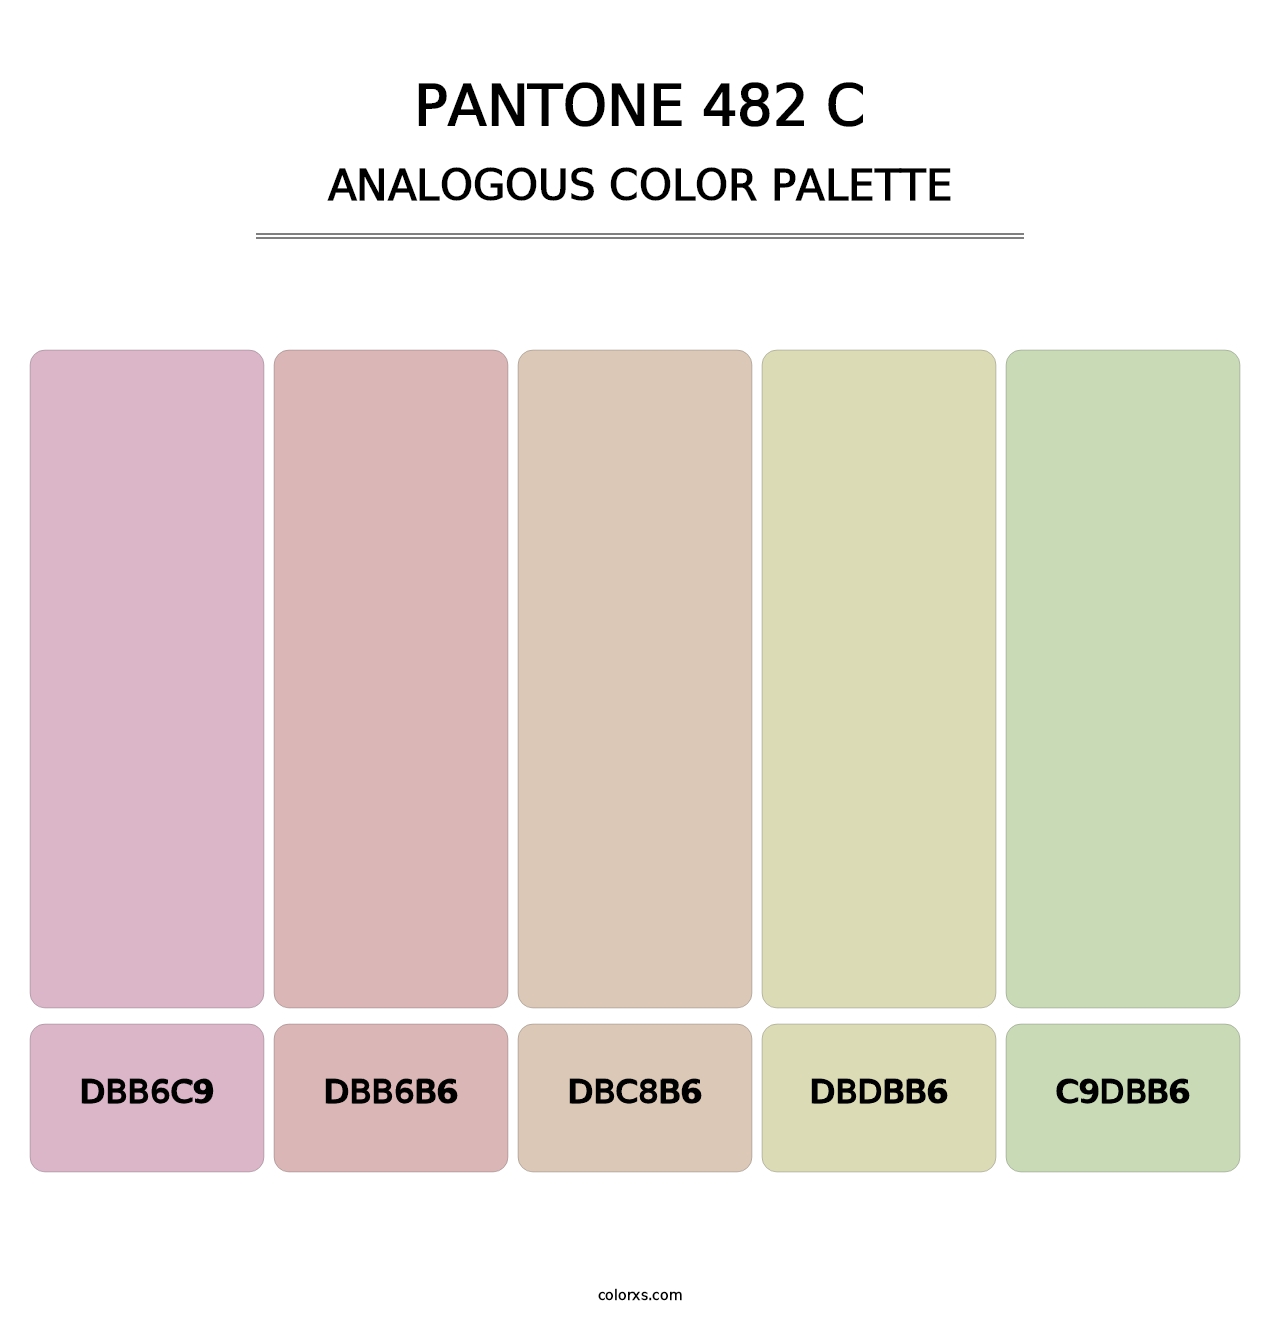 PANTONE 482 C - Analogous Color Palette